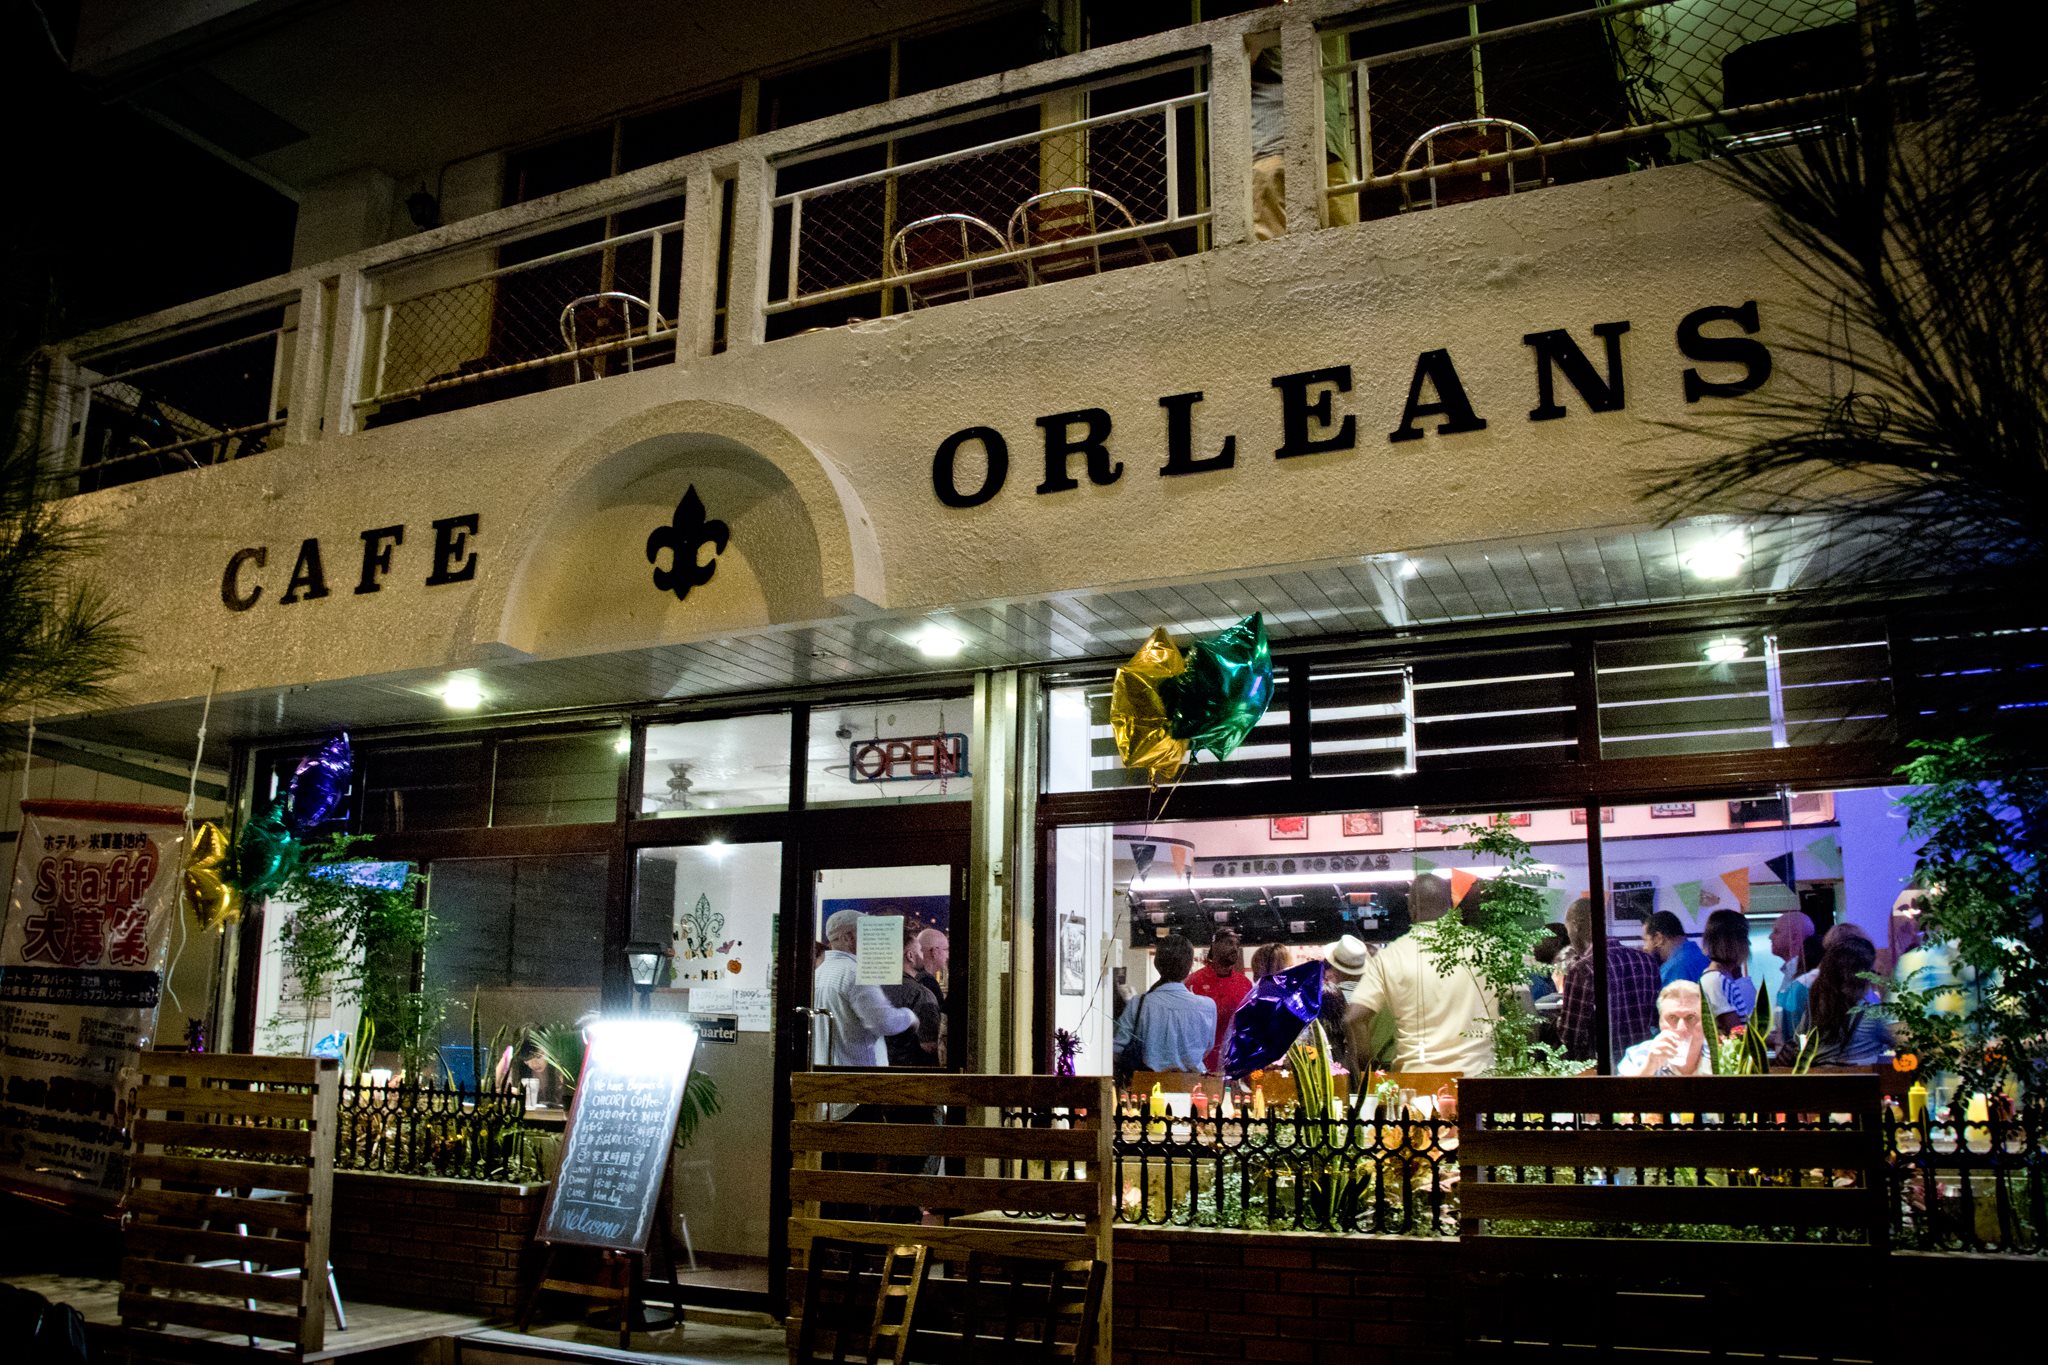 October 2016 - Cafe Orleans